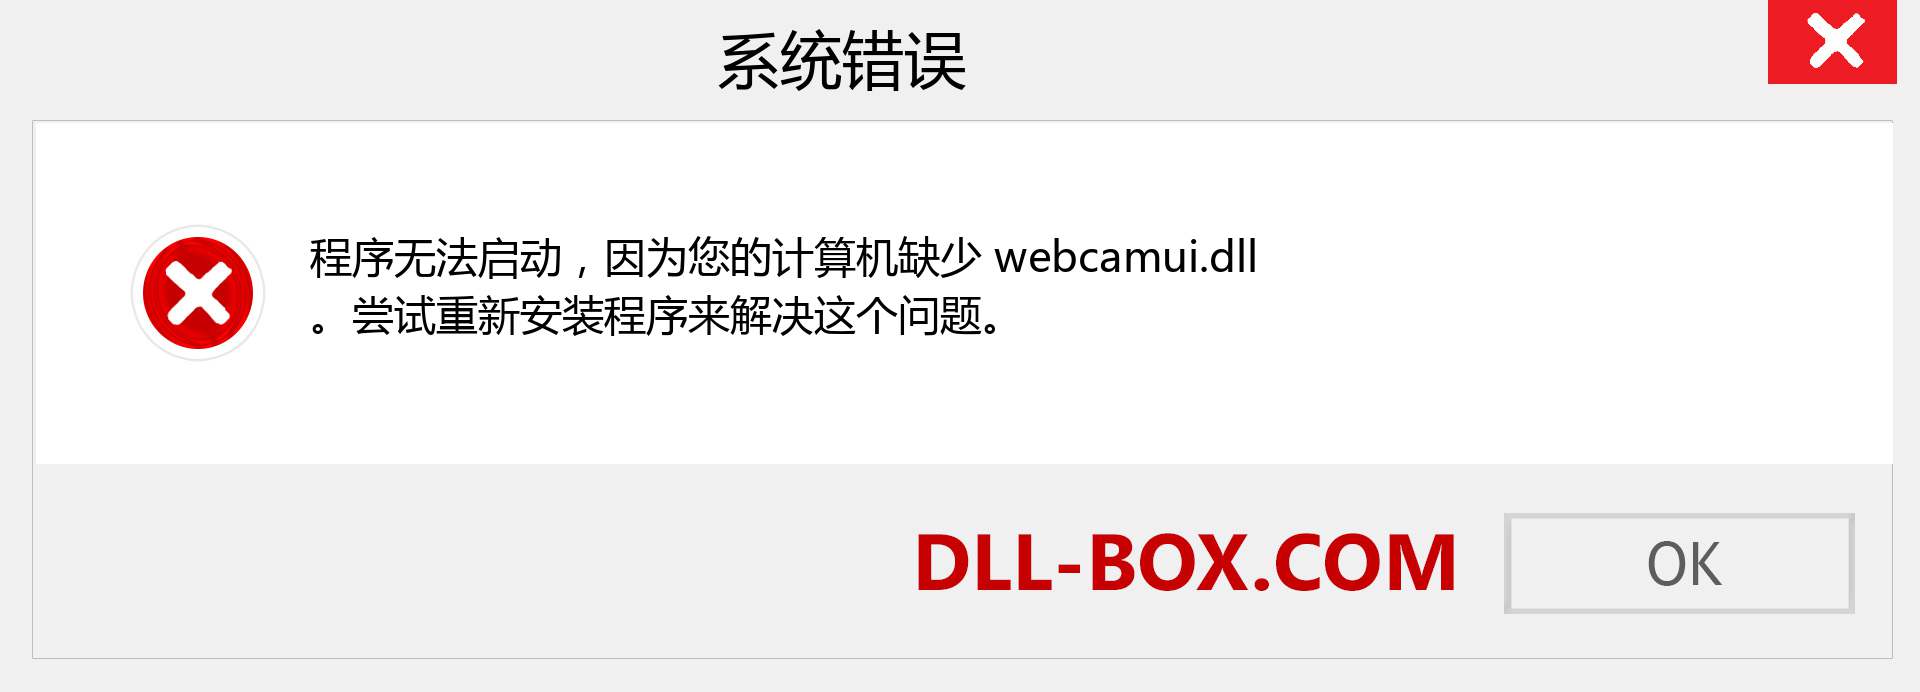 webcamui.dll 文件丢失？。 适用于 Windows 7、8、10 的下载 - 修复 Windows、照片、图像上的 webcamui dll 丢失错误